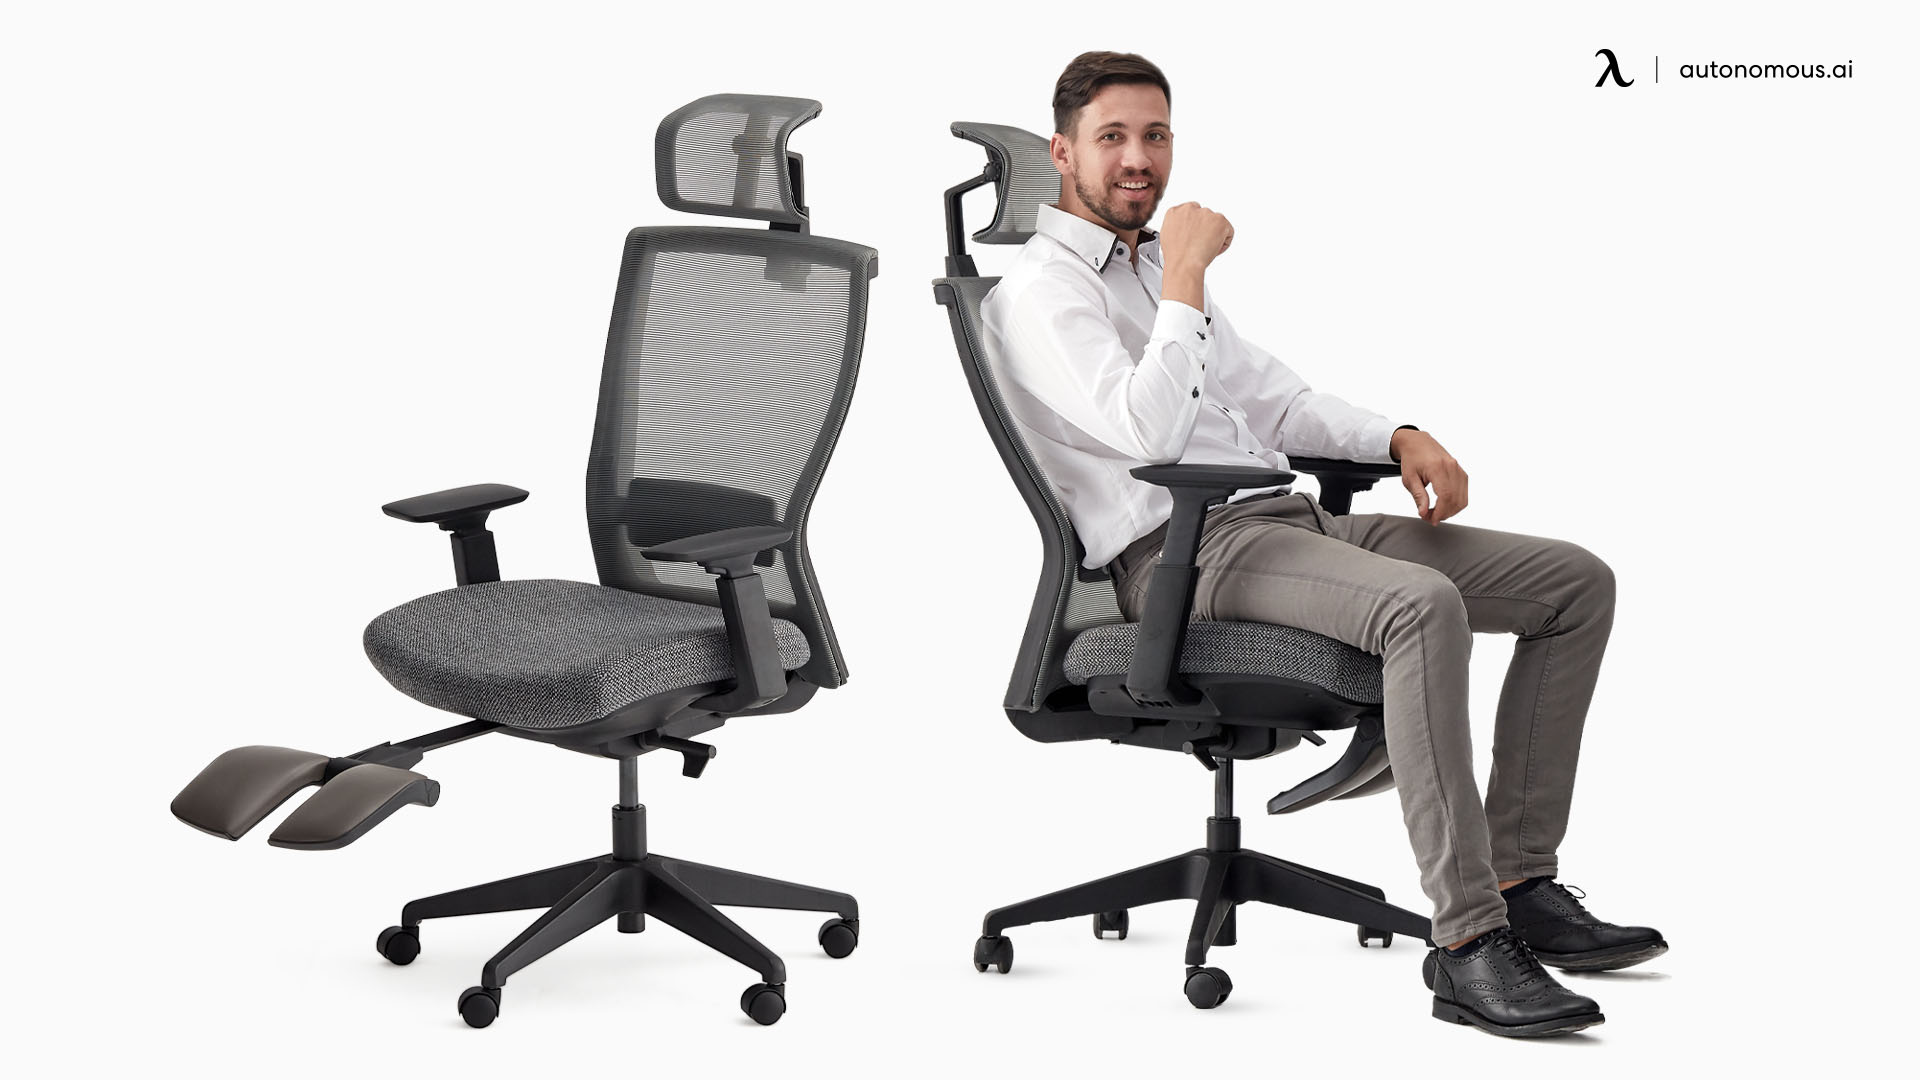 ErgoChair Recline rolling office desk chair